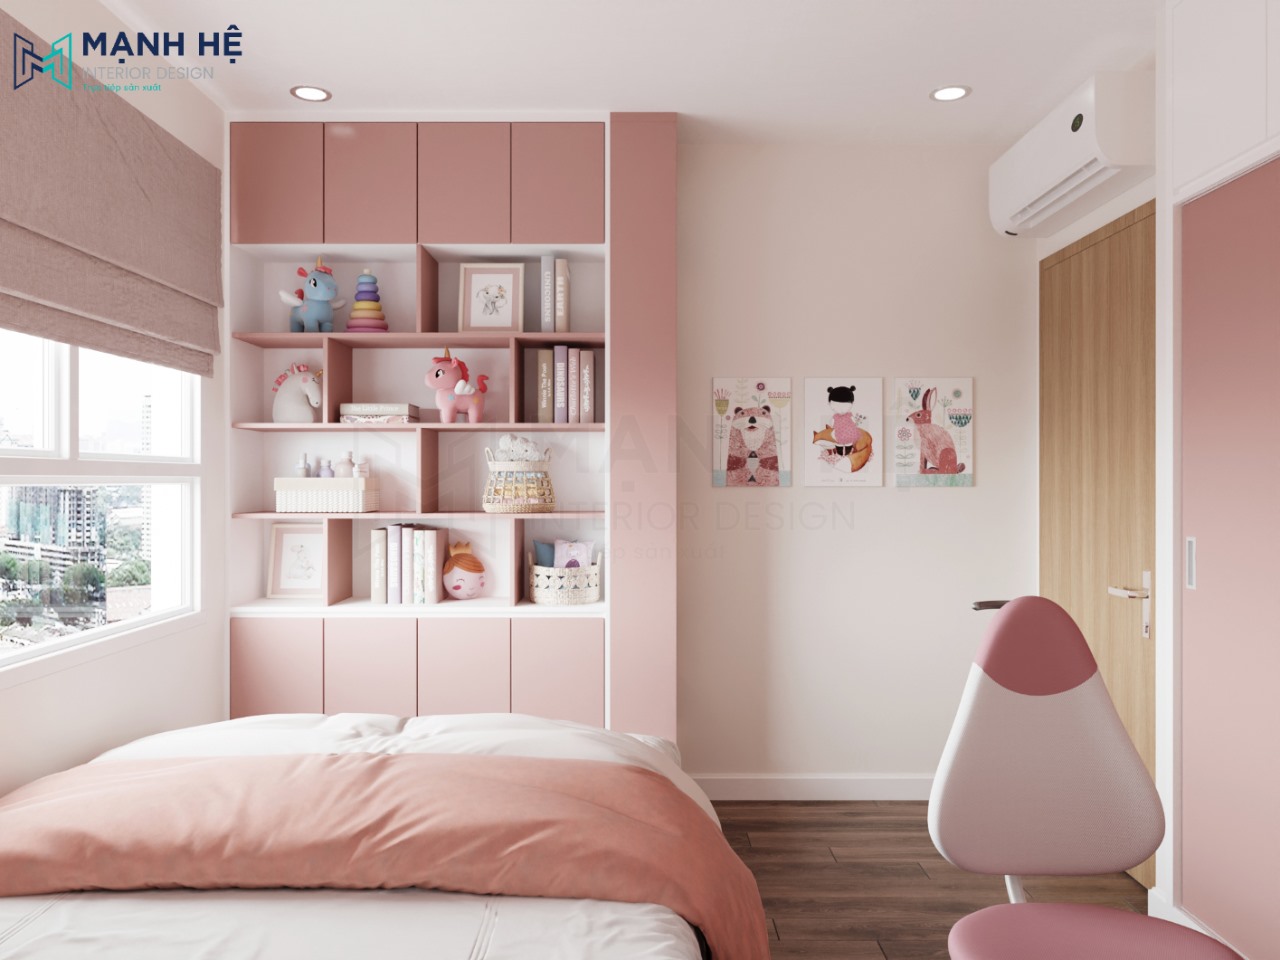 Kê tủ trang trí đặt dưới chân giường được sơn gam màu hồng đồng bộ với không gian